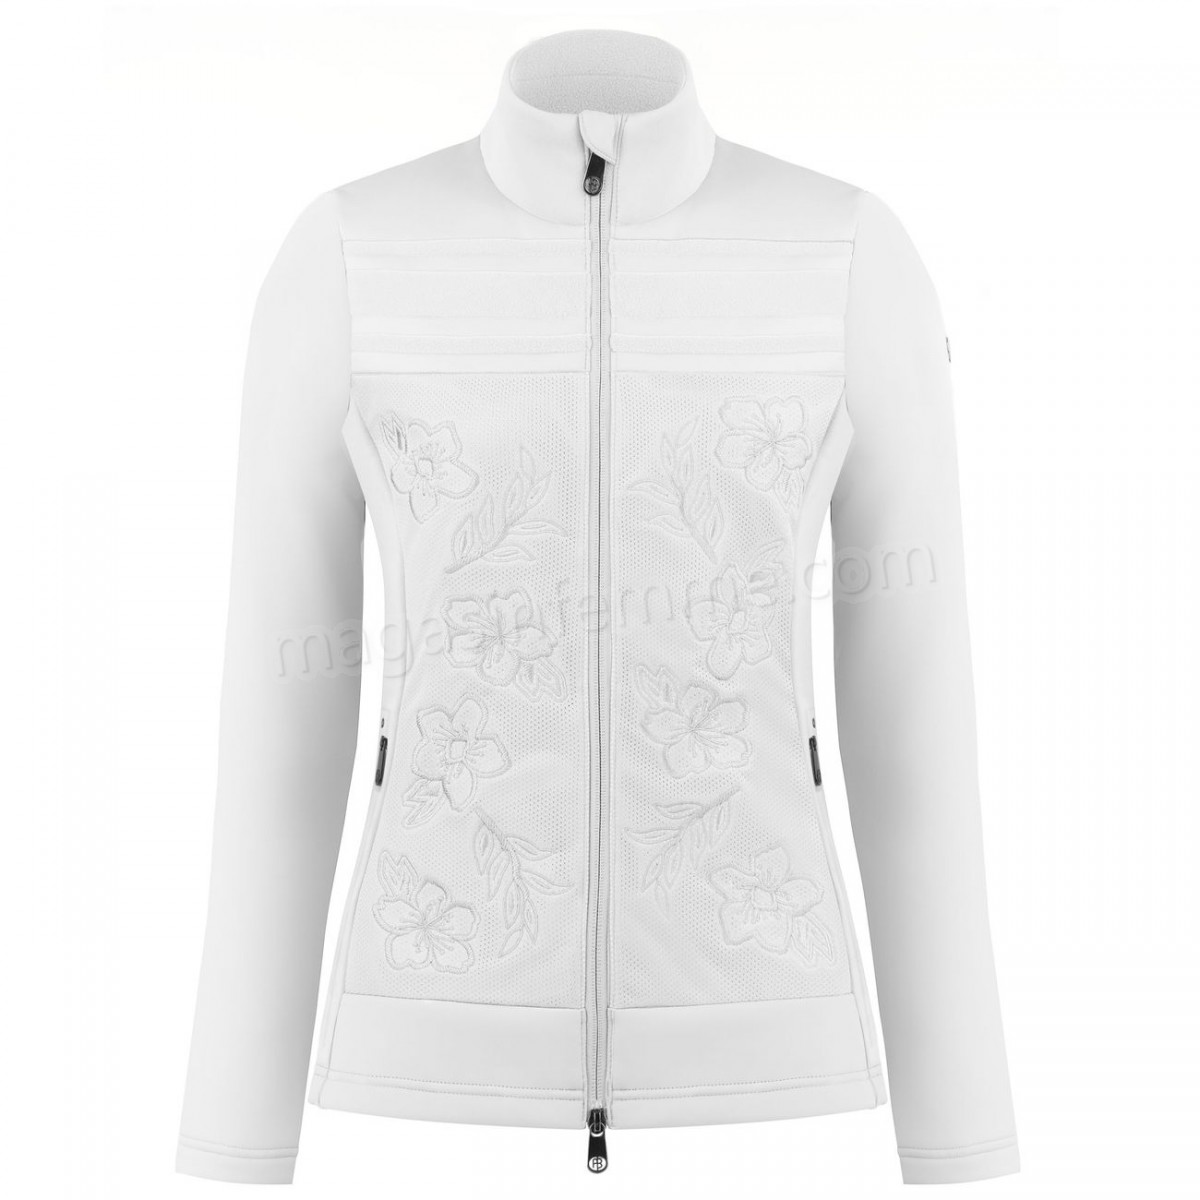 Poivre Blanc-Sports d'hiver femme POIVRE BLANC Veste En Polaire Poivre Blanc Hybrid Stretch Fleece Jacket 1605 White Femme en solde - -2